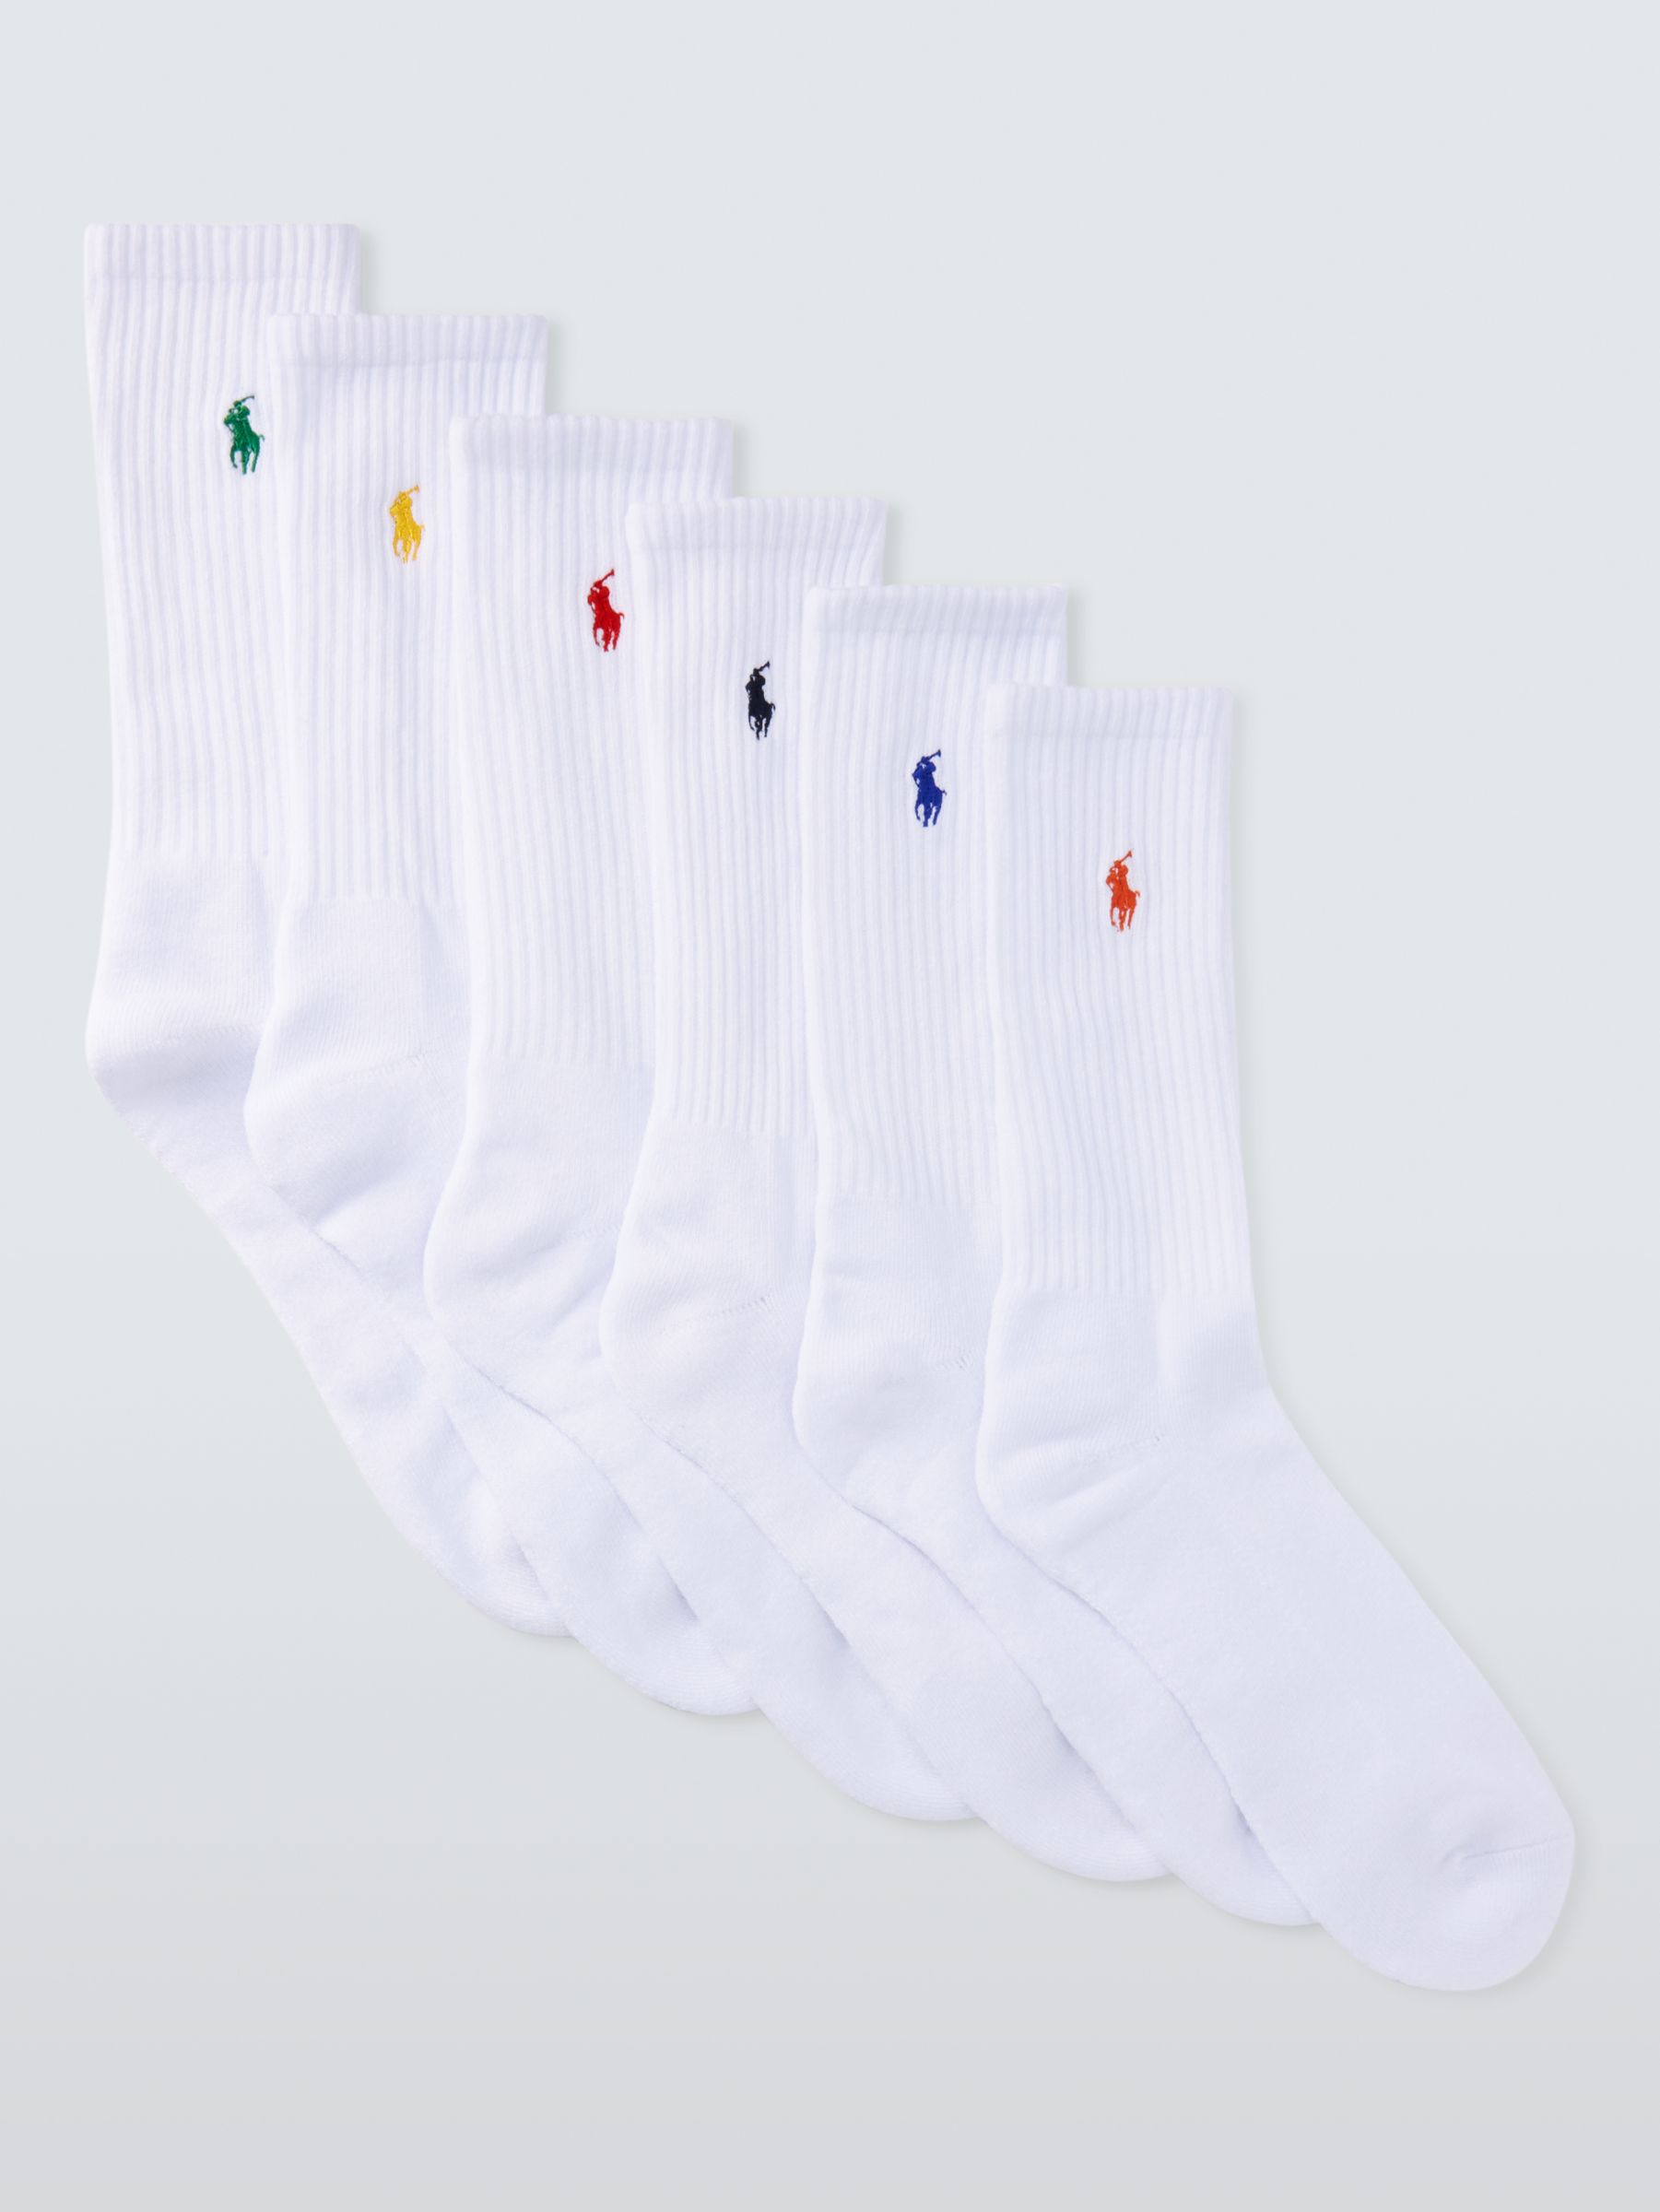 Ralph Lauren Crew Socks, Pack of 6, White